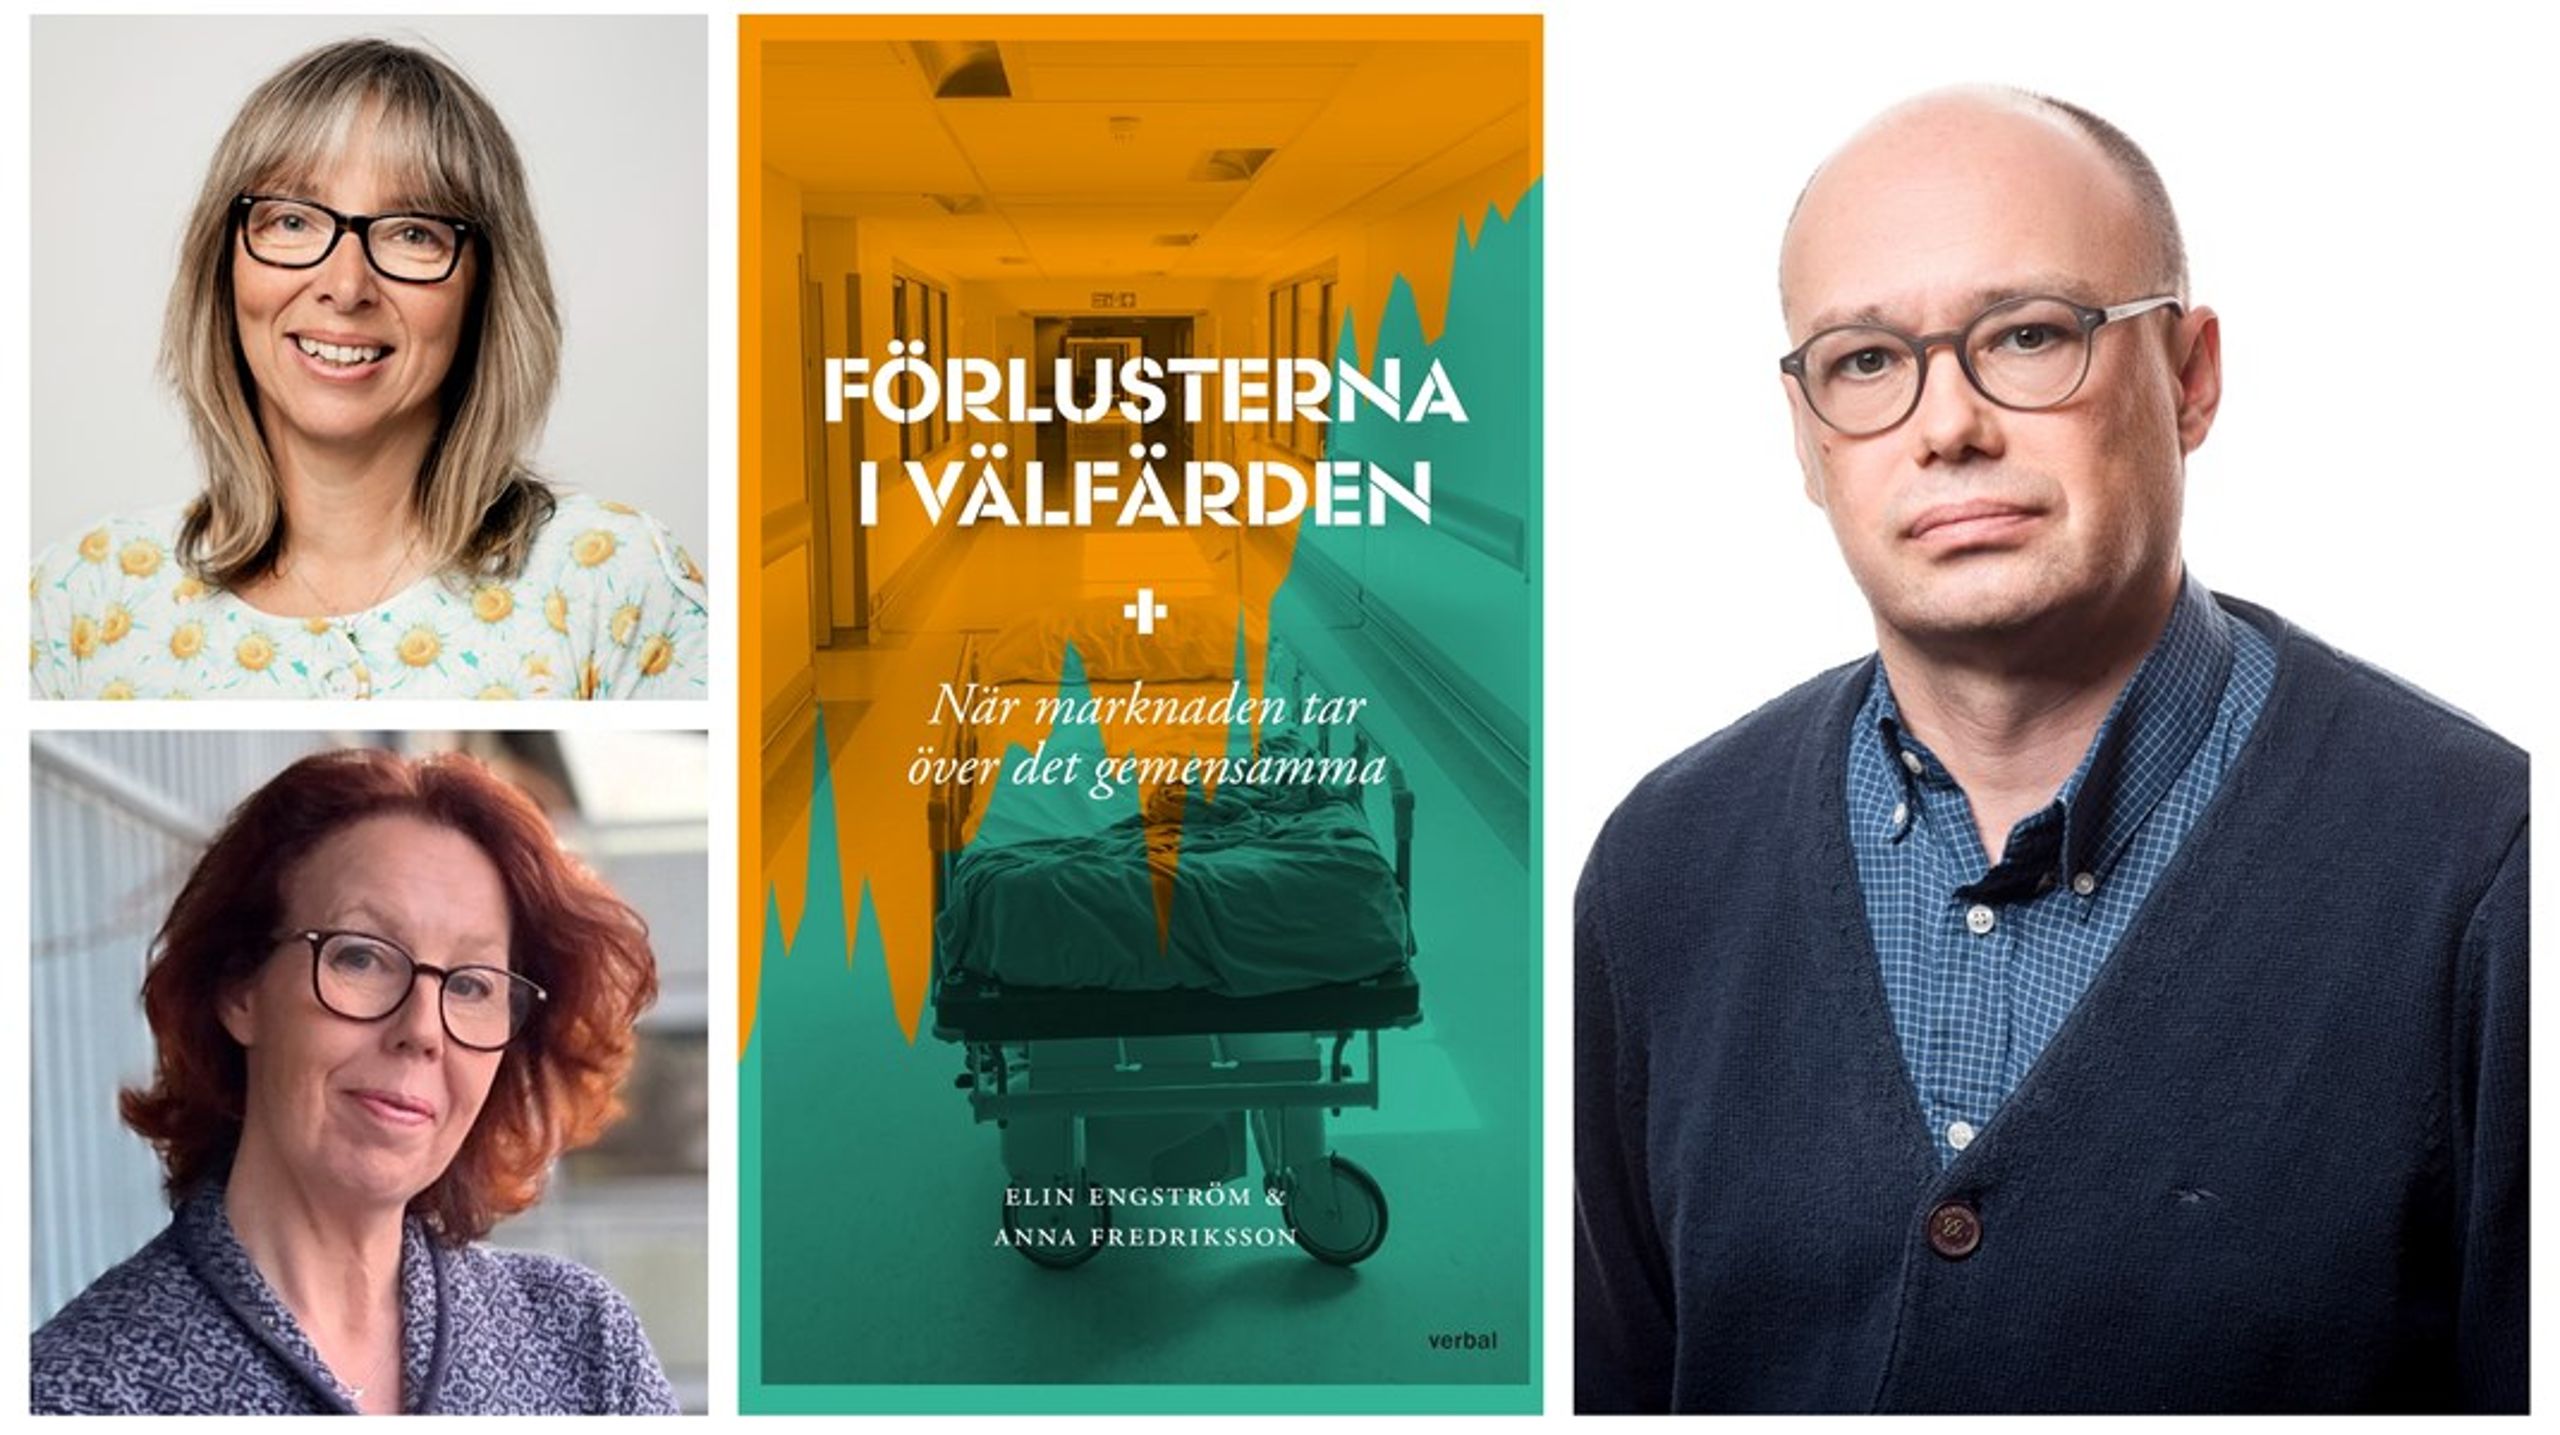 Det finns en dualitet i boken Förlusterna i Välfärden av&nbsp; Anna Fredriksson och Elin Engström, menar Mattias Lundbäck, hälsoekonom med ett förflutet på såväl Svenskt näringsliv som SKR.&nbsp;